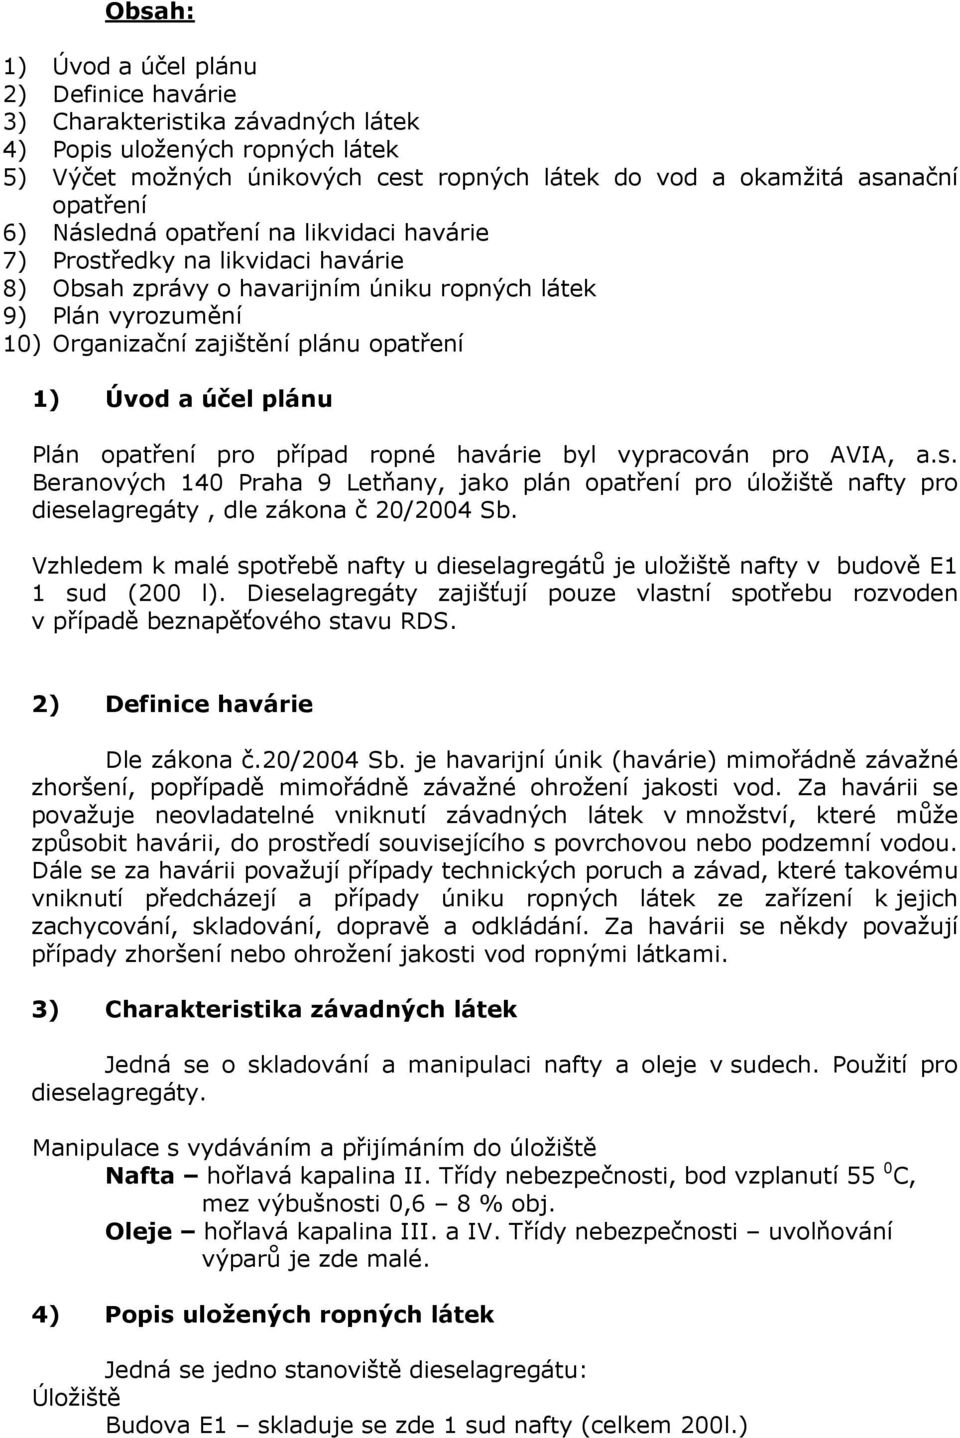 účel plánu Plán opatření pro případ ropné havárie byl vypracován pro AVIA, a.s. Beranových 140 Praha 9 Letňany, jako plán opatření pro úložiště nafty pro dieselagregáty, dle zákona č 20/2004 Sb.